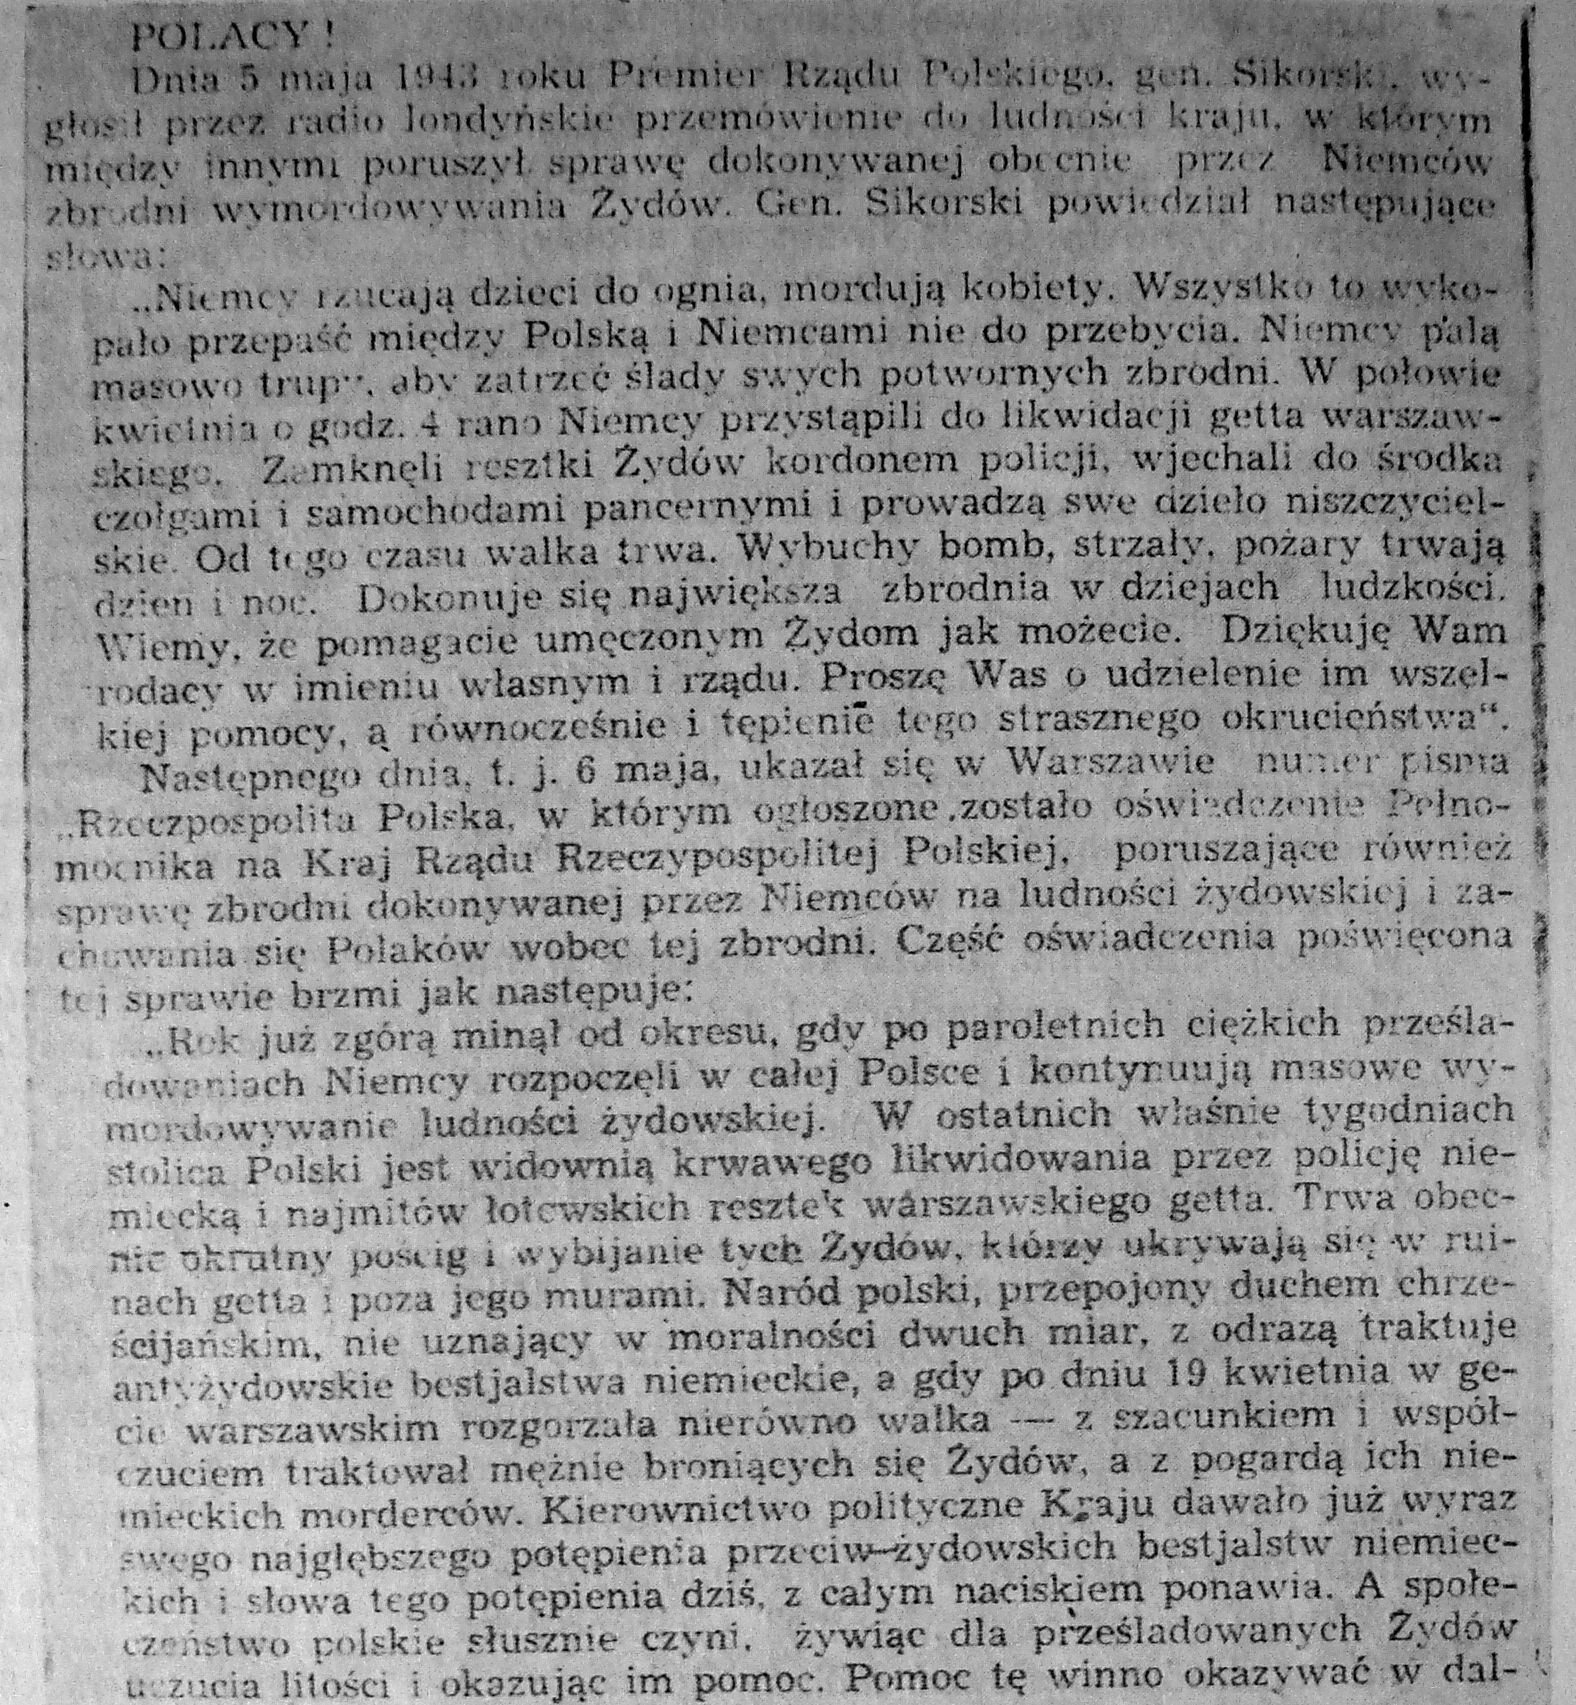 Fragment ulotki wydanej w Warszawie w maju 1943 roku z apelem Władysława Sikorskiego o pomoc Żydom oraz potępieniem Polaków pomagającym Niemcom.